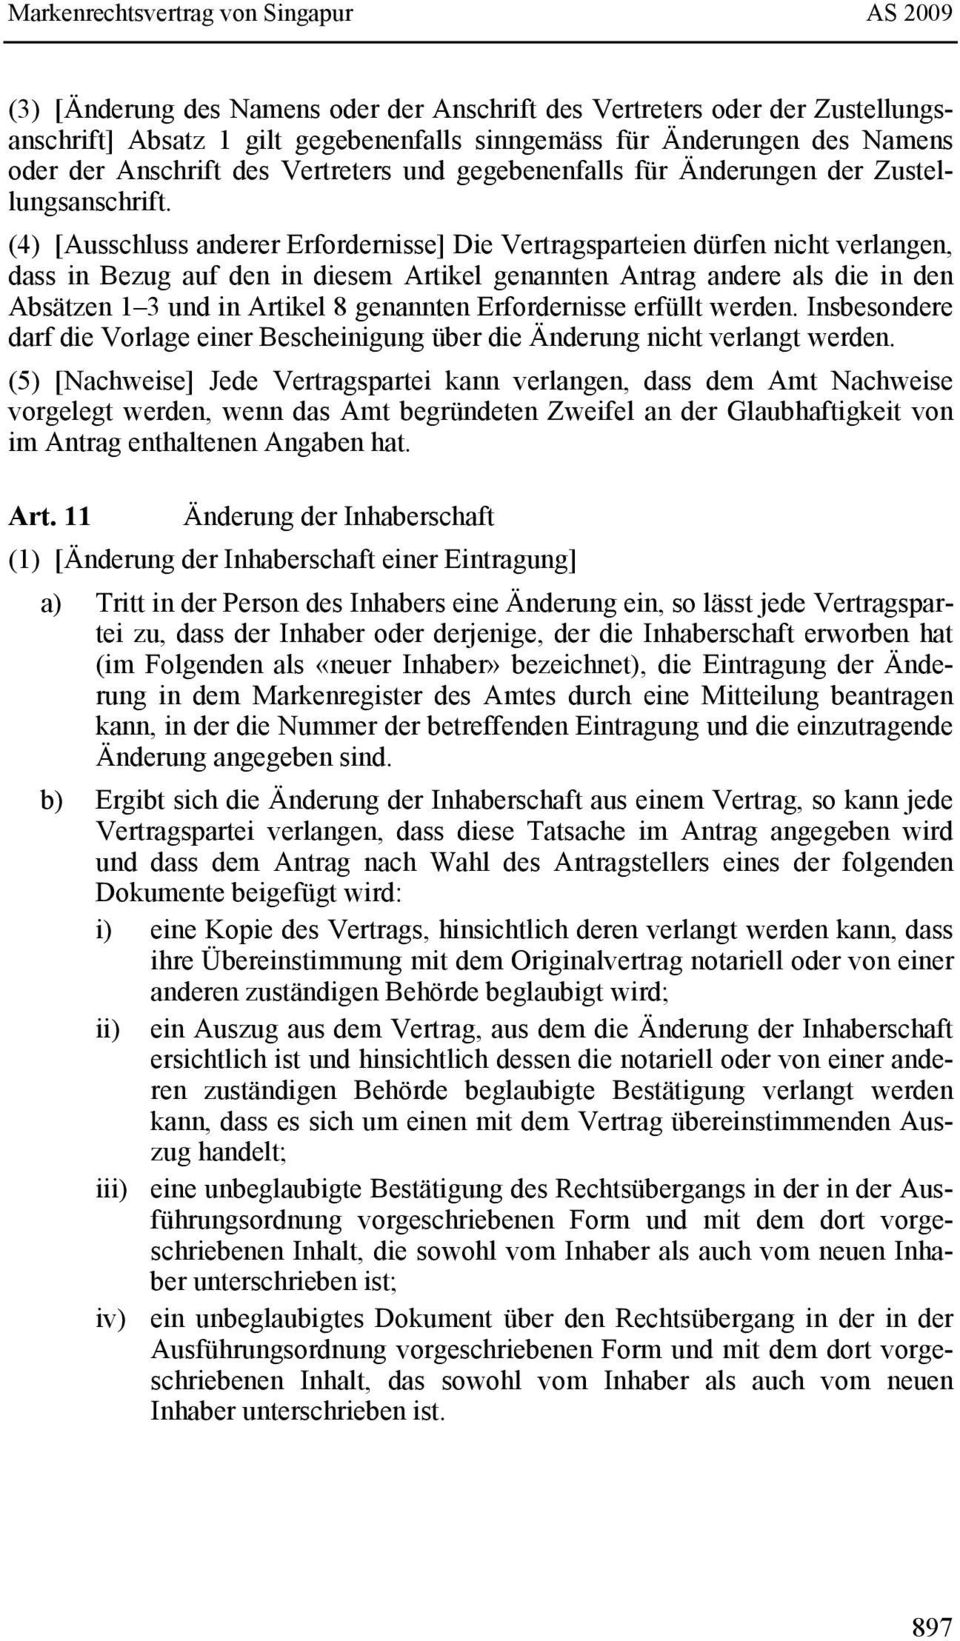 (4) [Ausschluss anderer Erfordernisse] Die Vertragsparteien dürfen nicht verlangen, dass in Bezug auf den in diesem Artikel genannten Antrag andere als die in den Absätzen 1 3 und in Artikel 8